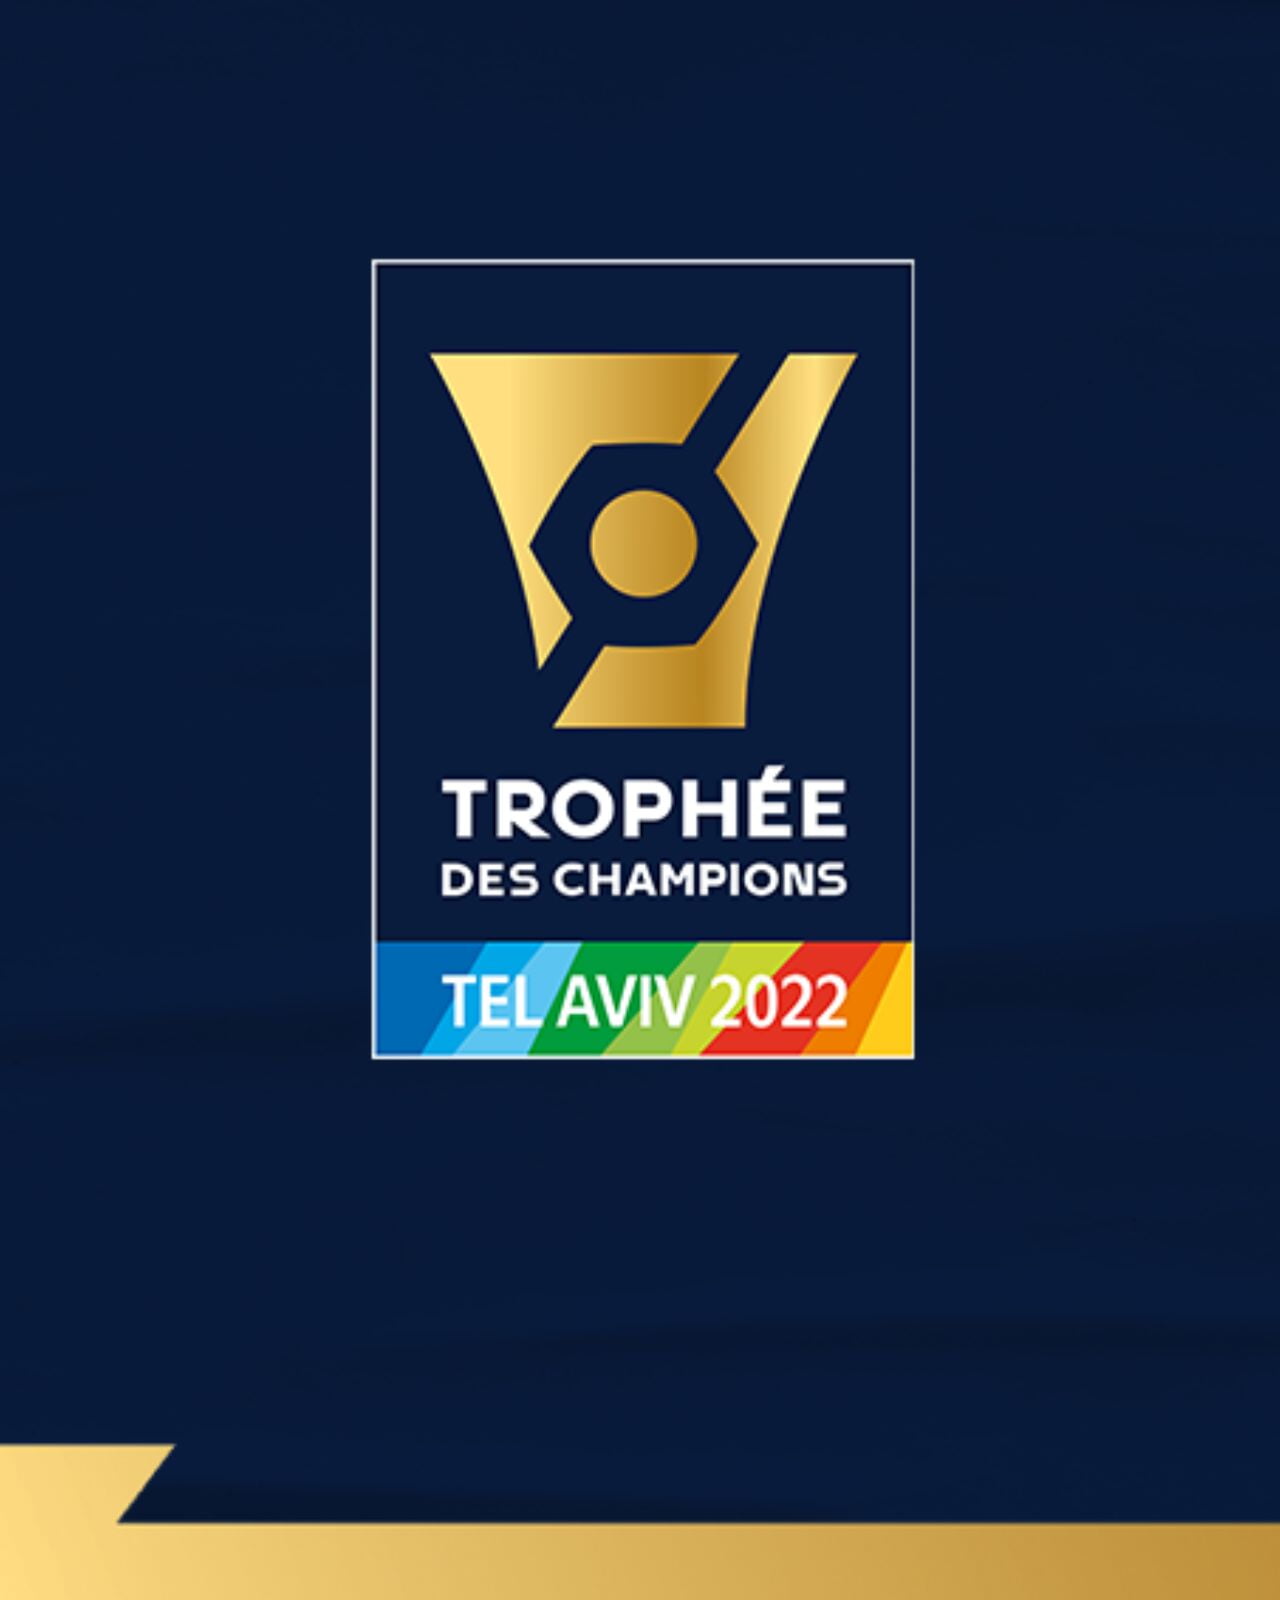 Le Trophée des Champions 2022 va opposer le PSG au FC Nantes.